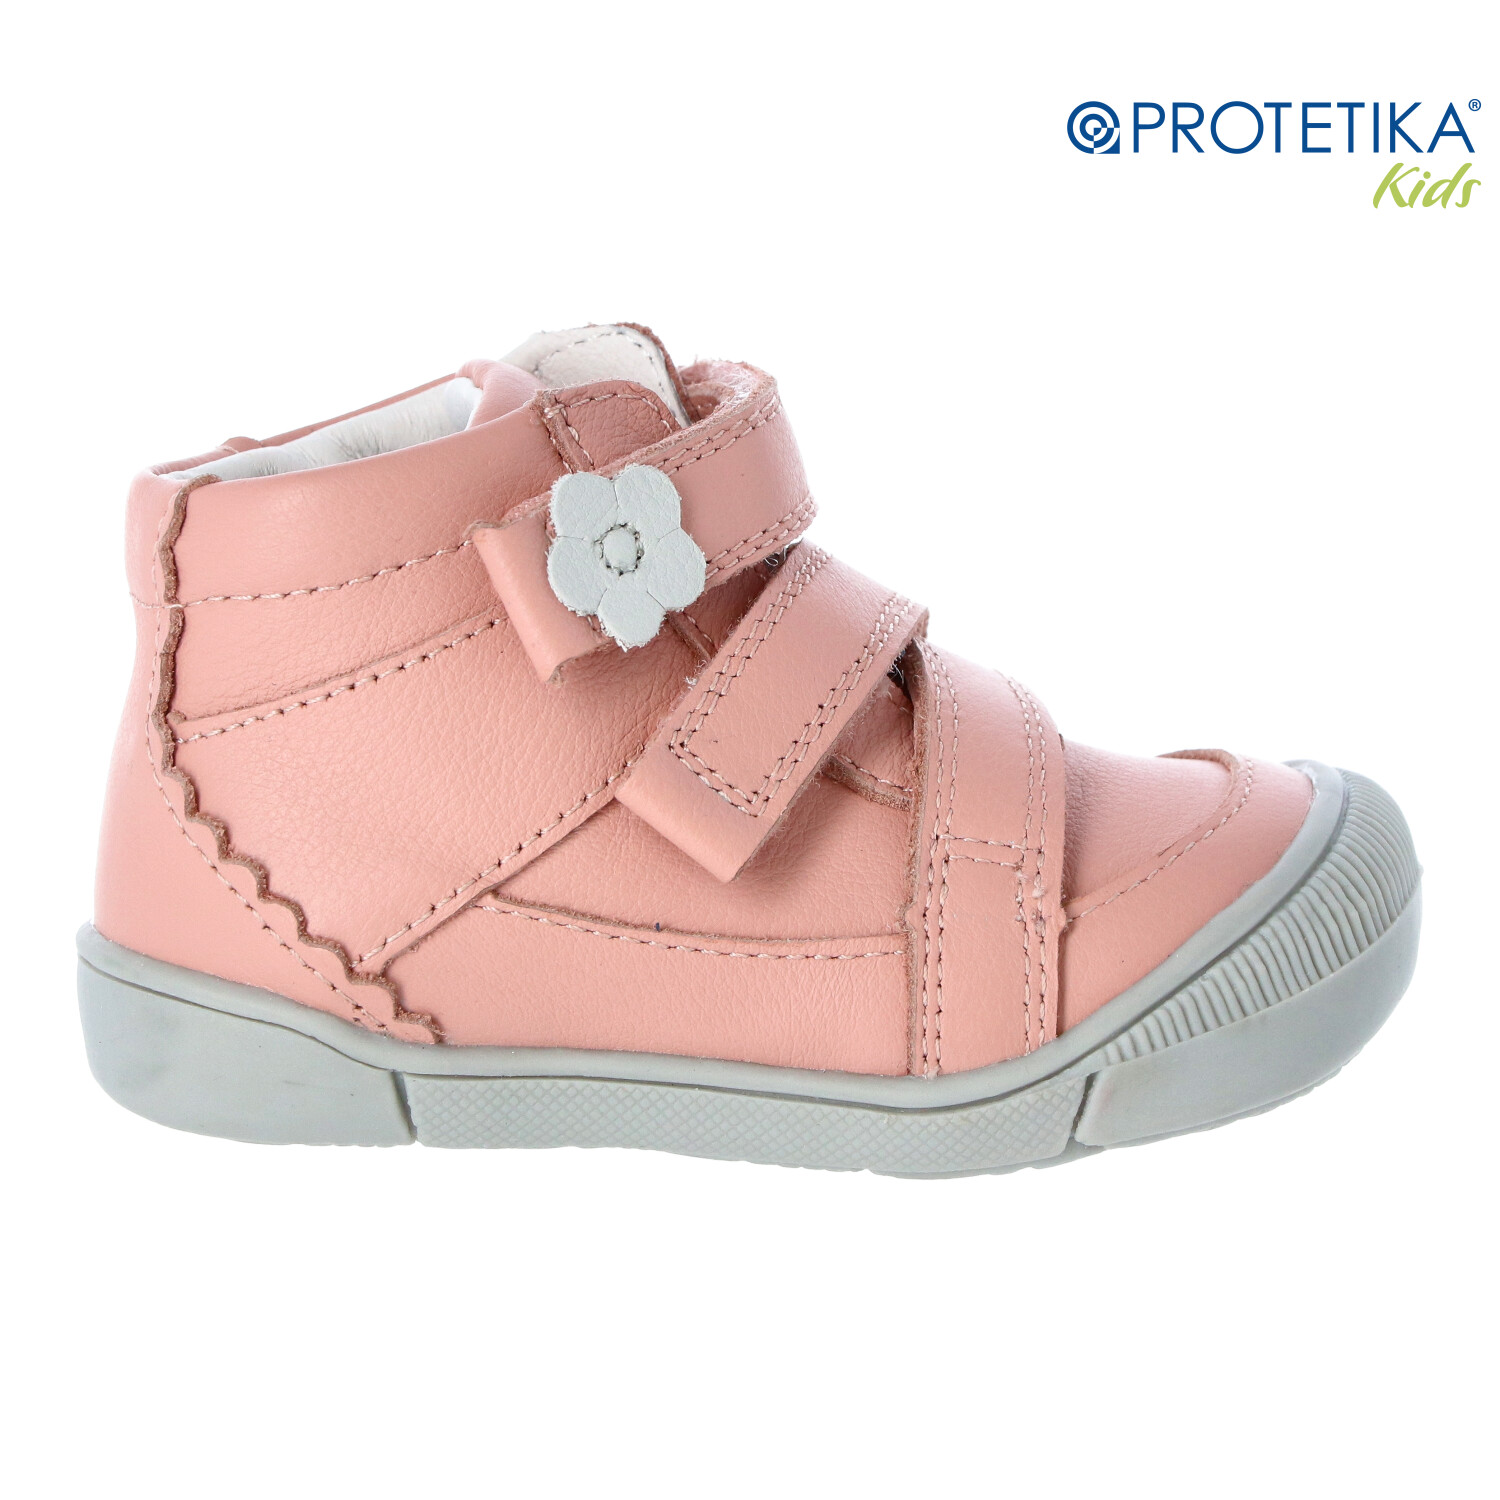 Protetika - topánky DINA pink